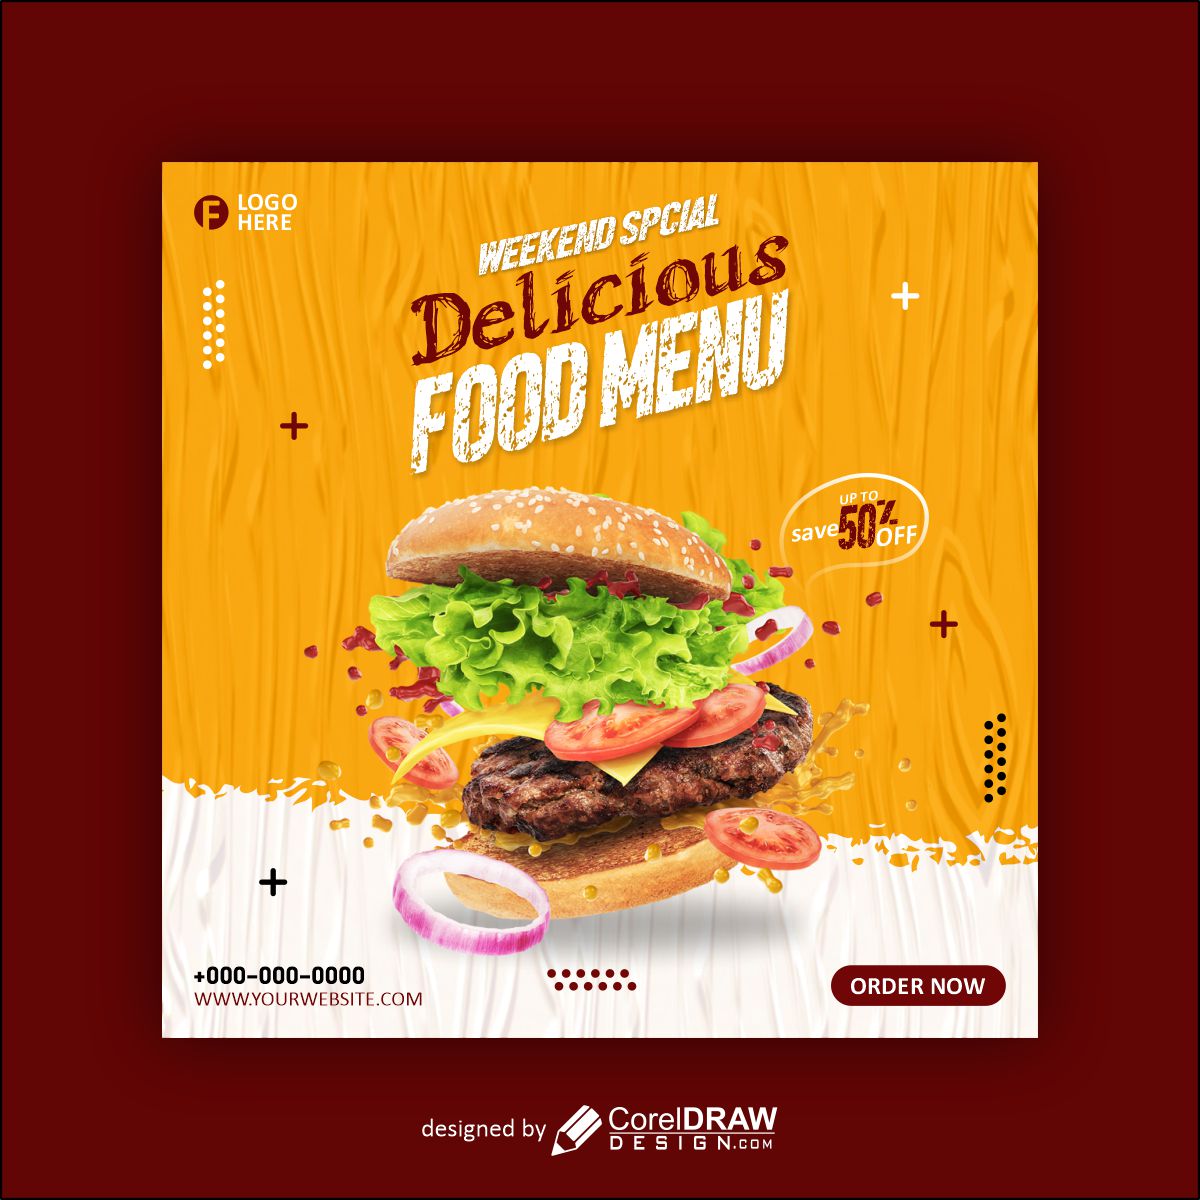 Delicious Food Menu poster vector design free image